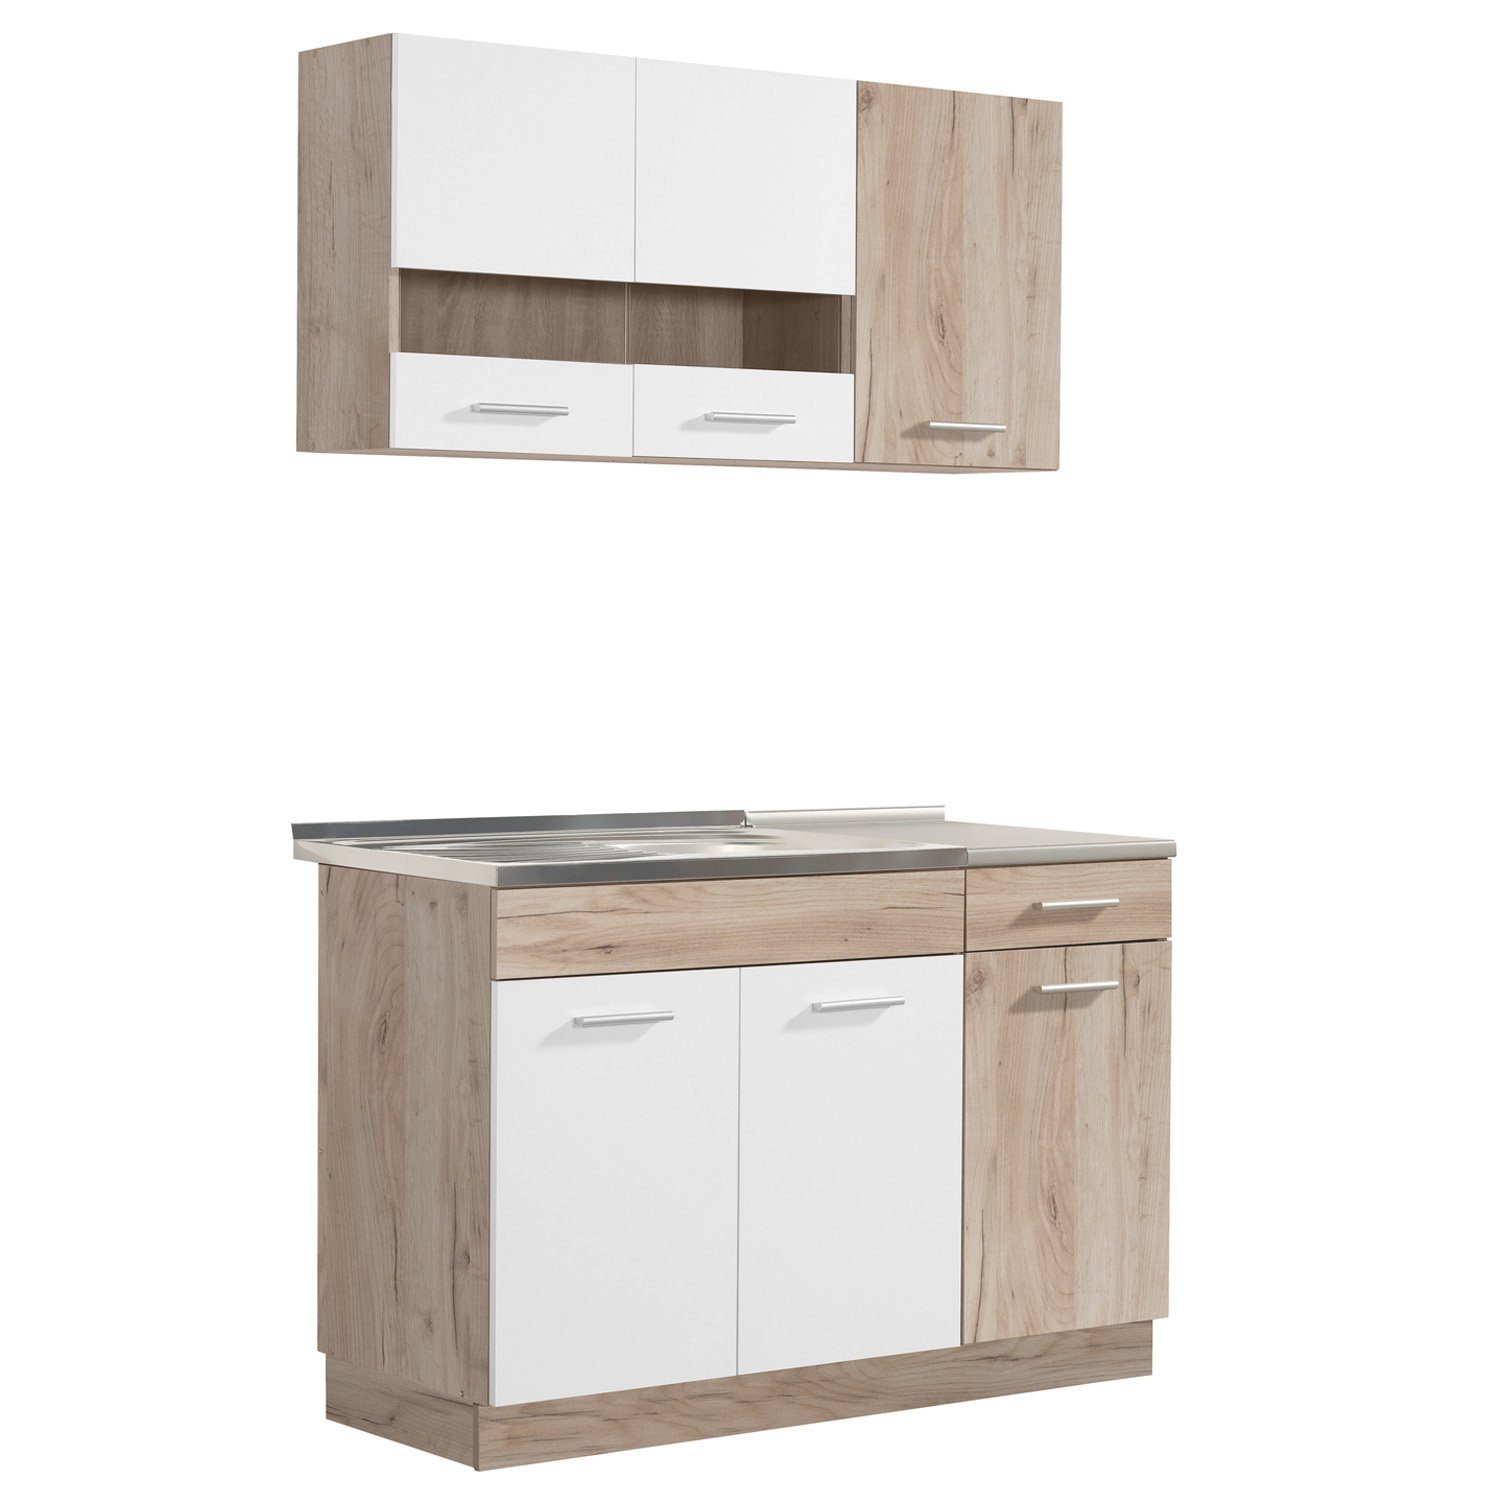 Homestyle4u Küchenzeile 120 cm ohne Geräte Singleküche Küchenschränke Weiß matt Eiche